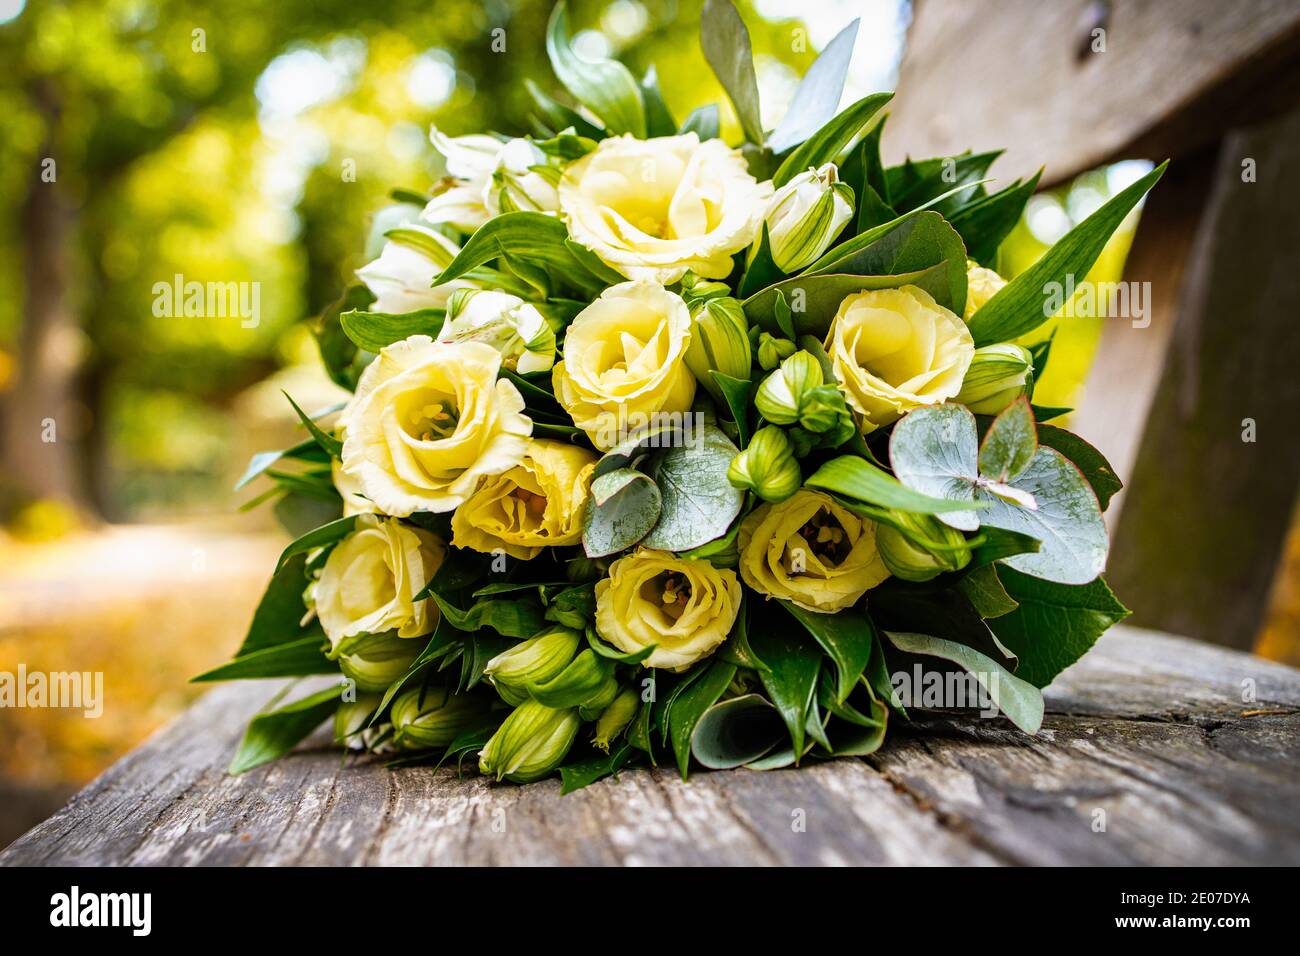 gelber Rosenstrauß Hochzeitsstrauß auf Holzbank Stock Photo